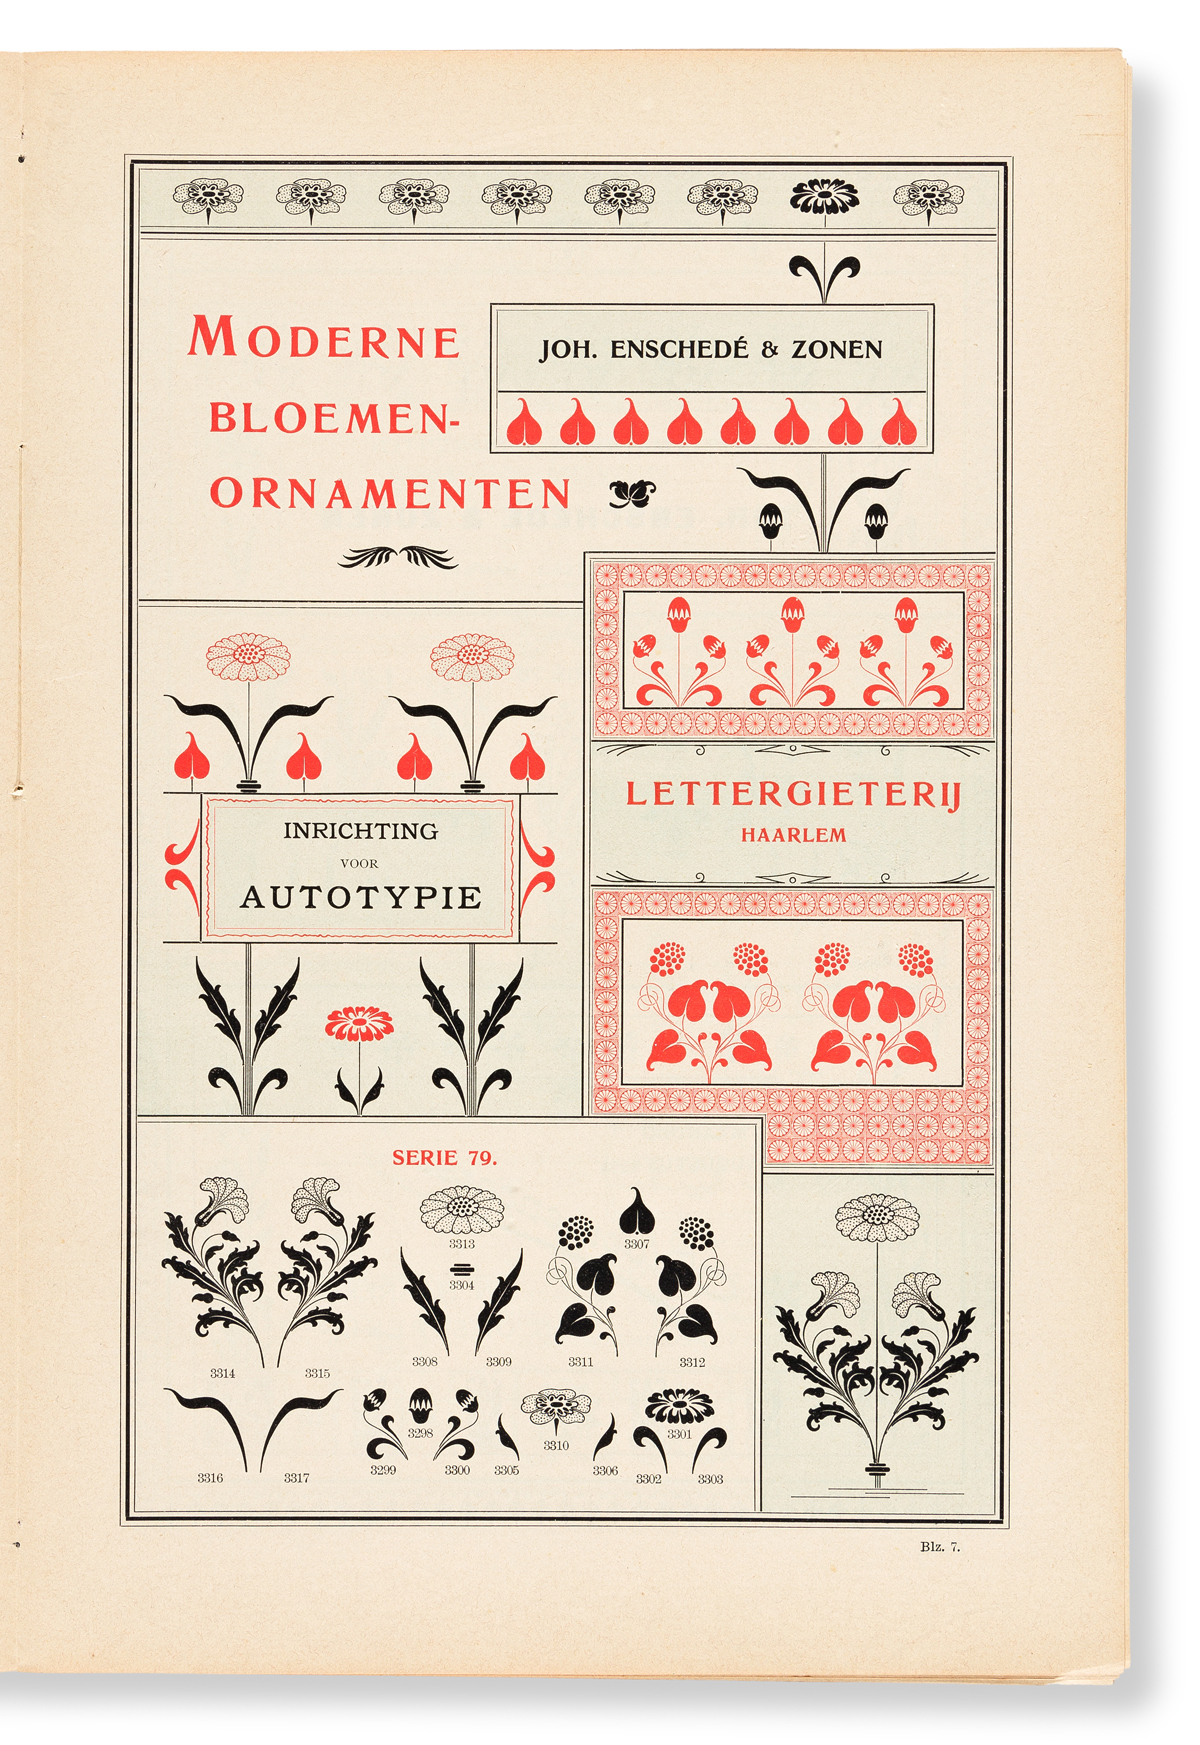 [SPECIMEN BOOK — JOHAN ENSCHEDÉ]. Ornamenten Hoofdlijsten en Sluitstukken. Joh. Enschedé & Zonen, Haarlem, 1904.